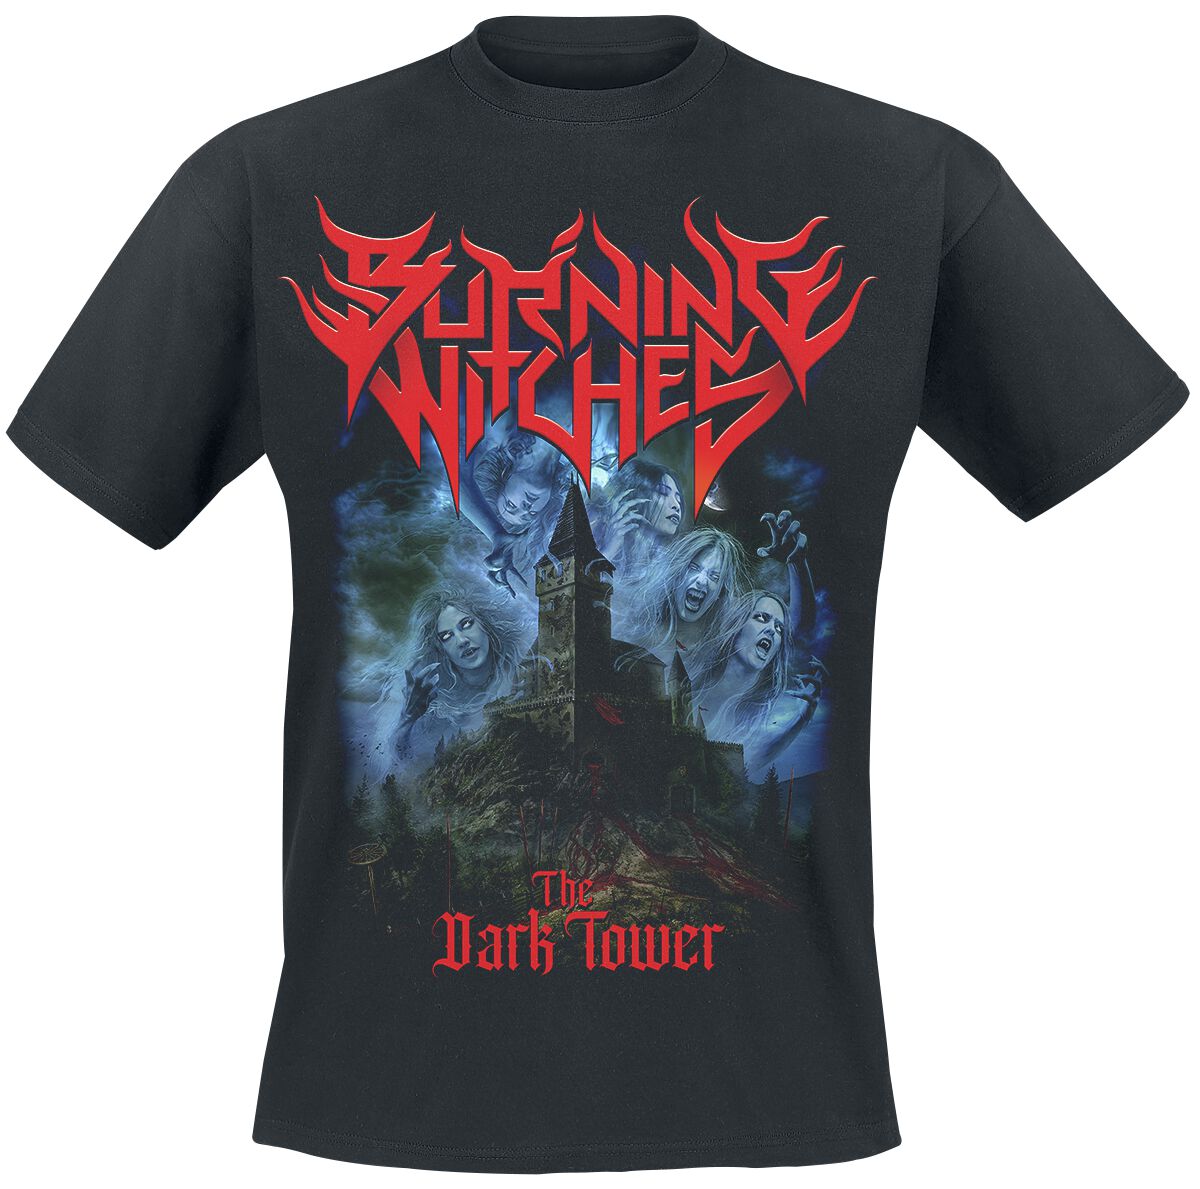 Burning Witches T-Shirt - The Dark Tower - S bis 4XL - für Männer - Größe M - schwarz  - Lizenziertes Merchandise!